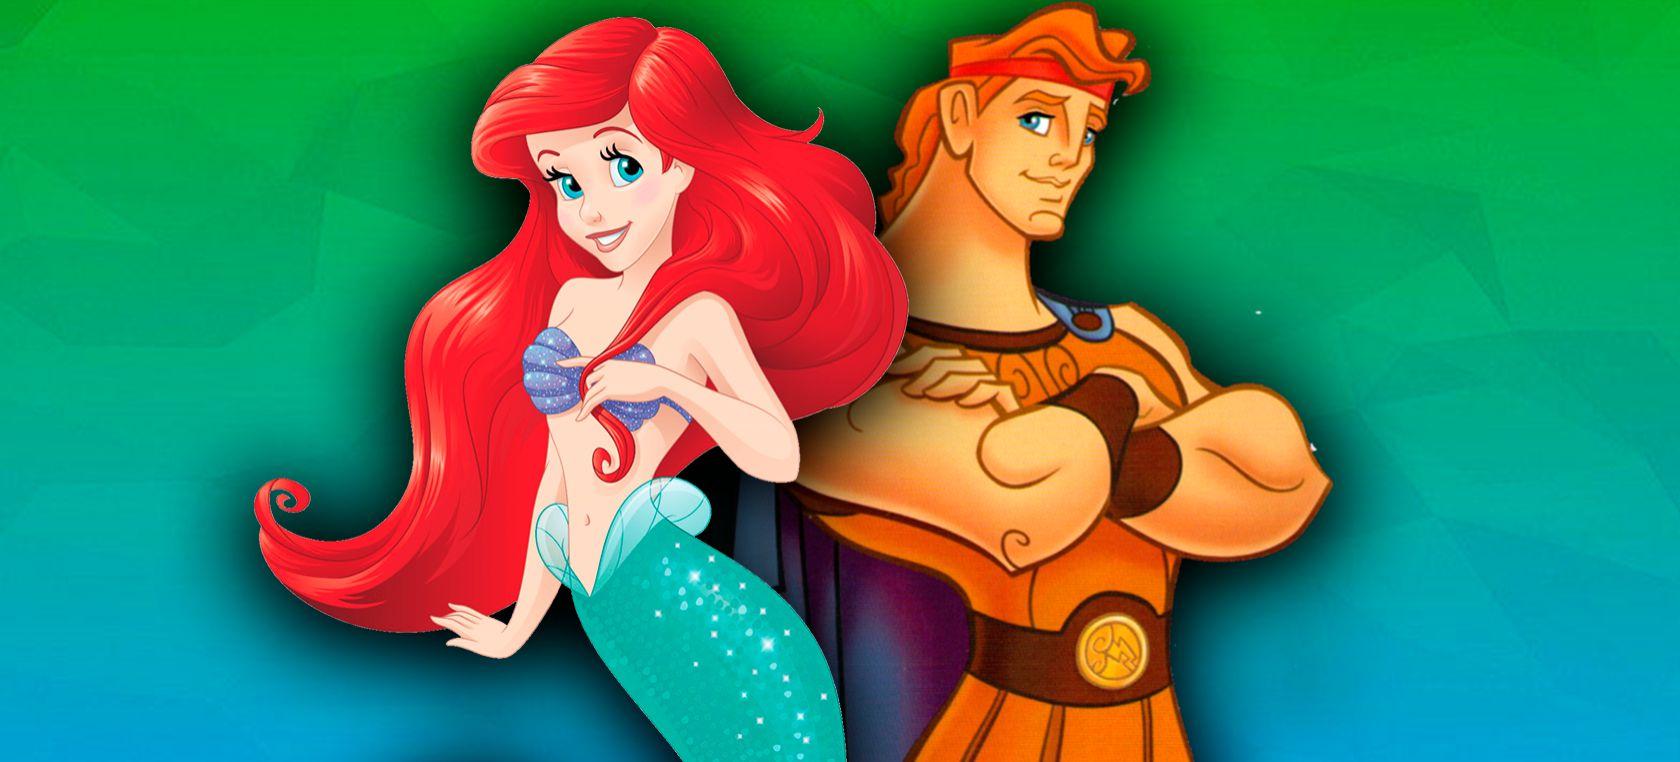 Ariel y Hercules son primos